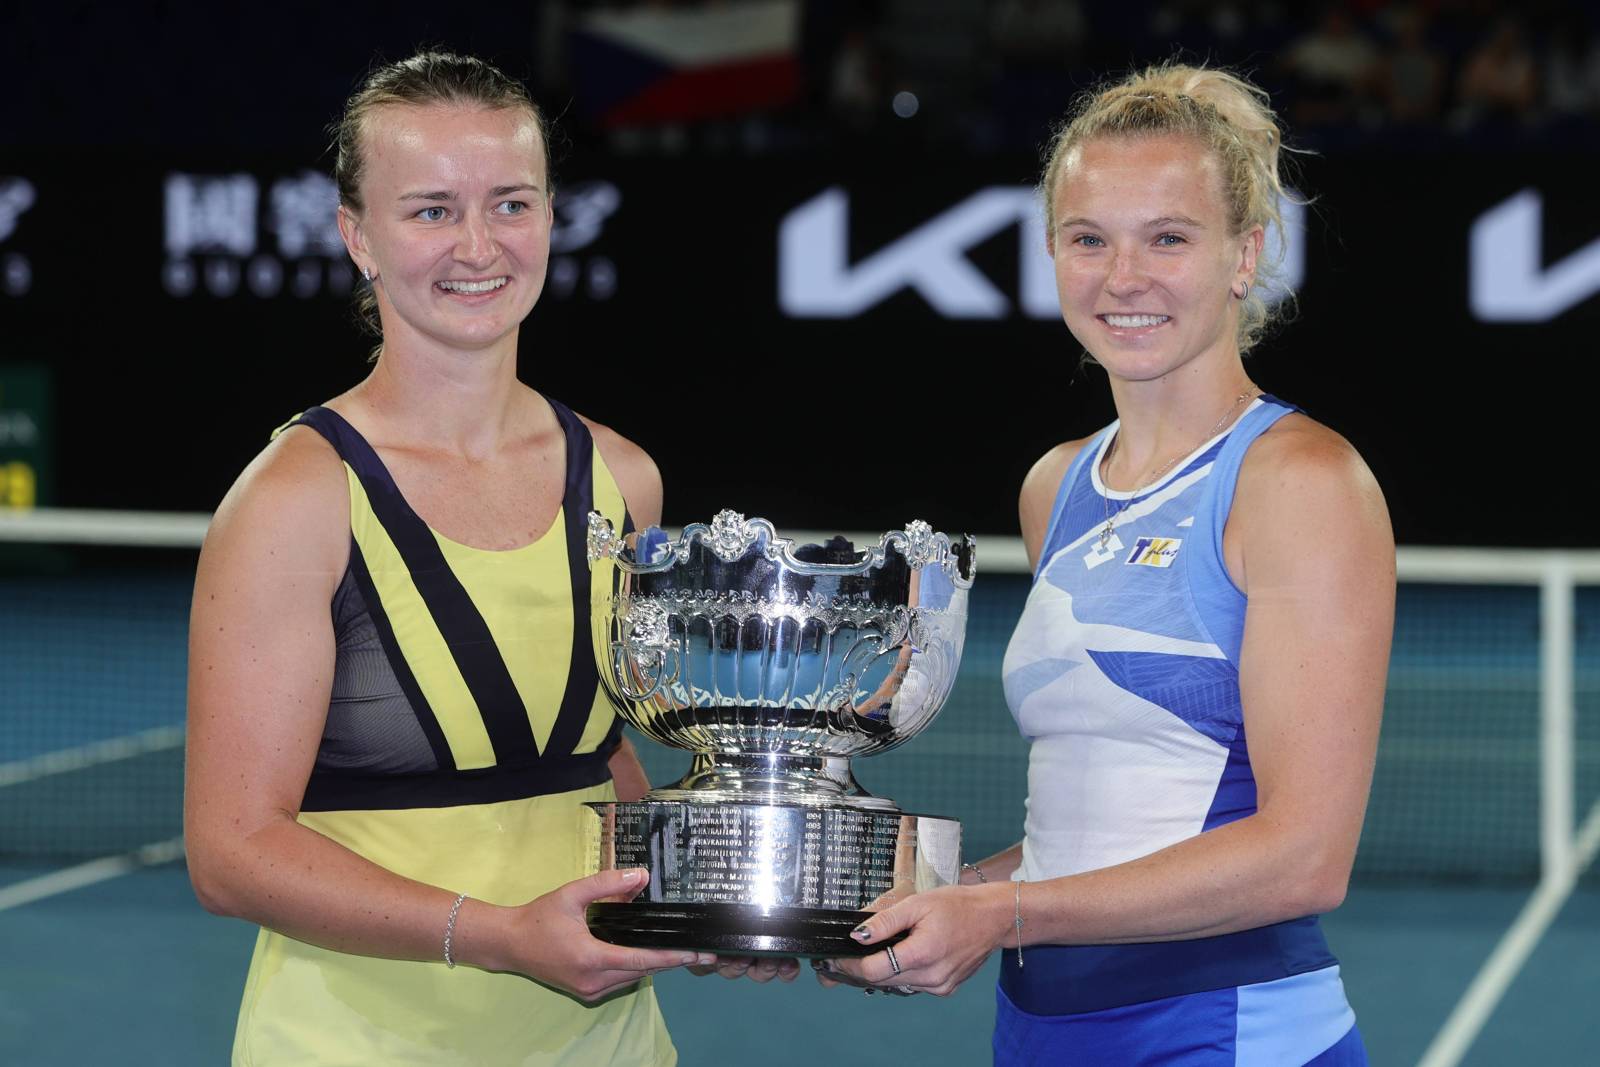 Чешки Крейчикова и Синякова в паре одержали победу на турнире в Индиан-Уэллсе